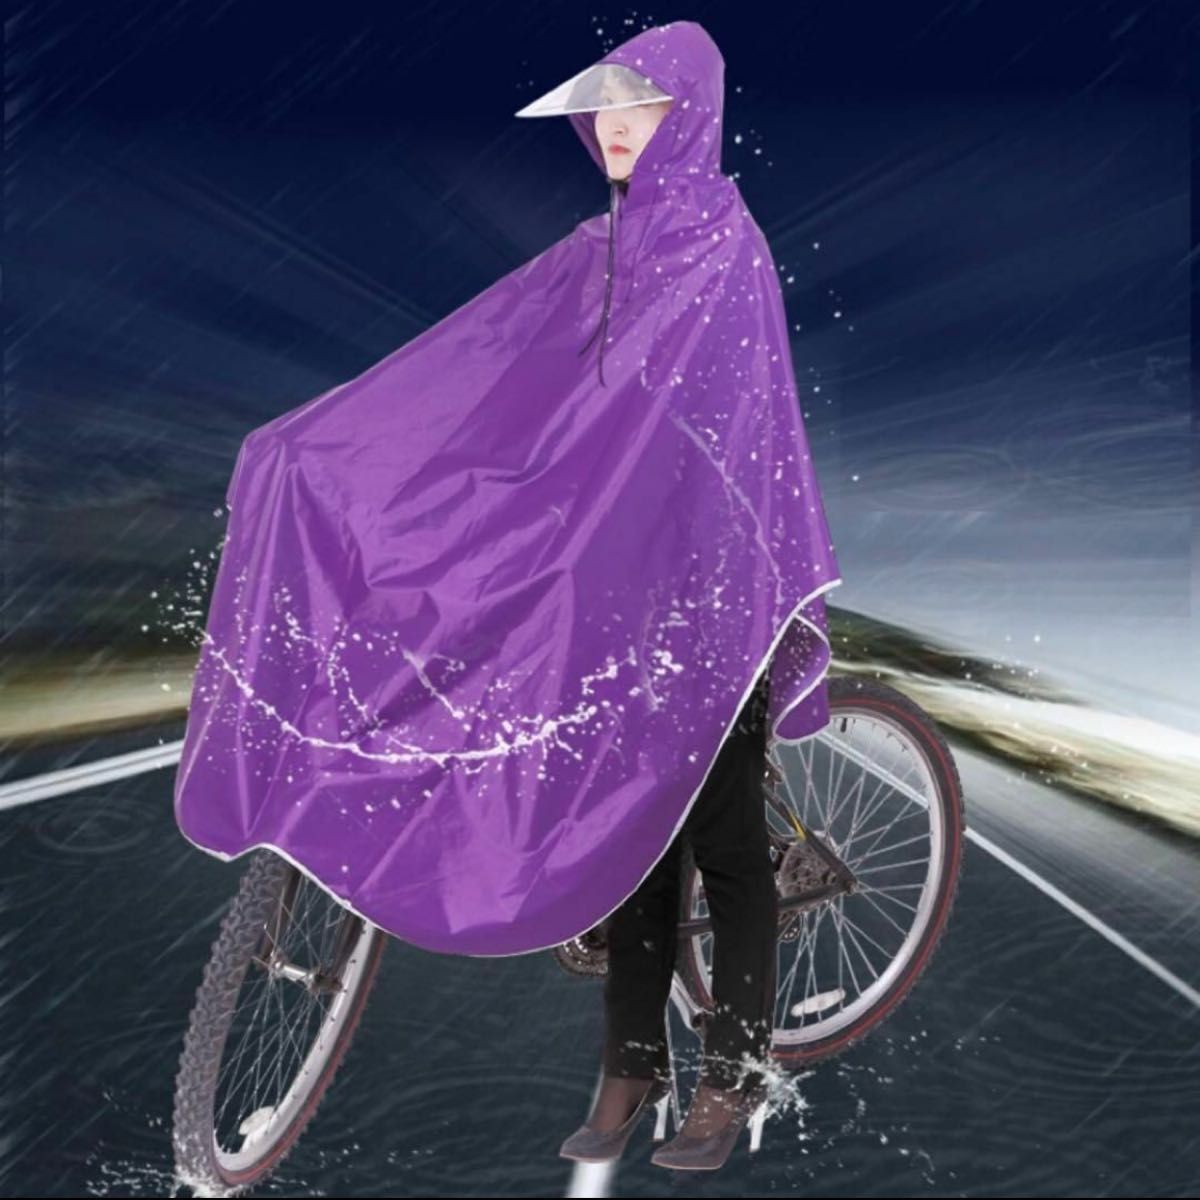  плащ Kappa непромокаемая одежда пончо все тело покрытие велосипед для мужчин и женщин дождь темно-синий темно-синий цвет плащ корзина покрытие ходить на работу посещение школы 